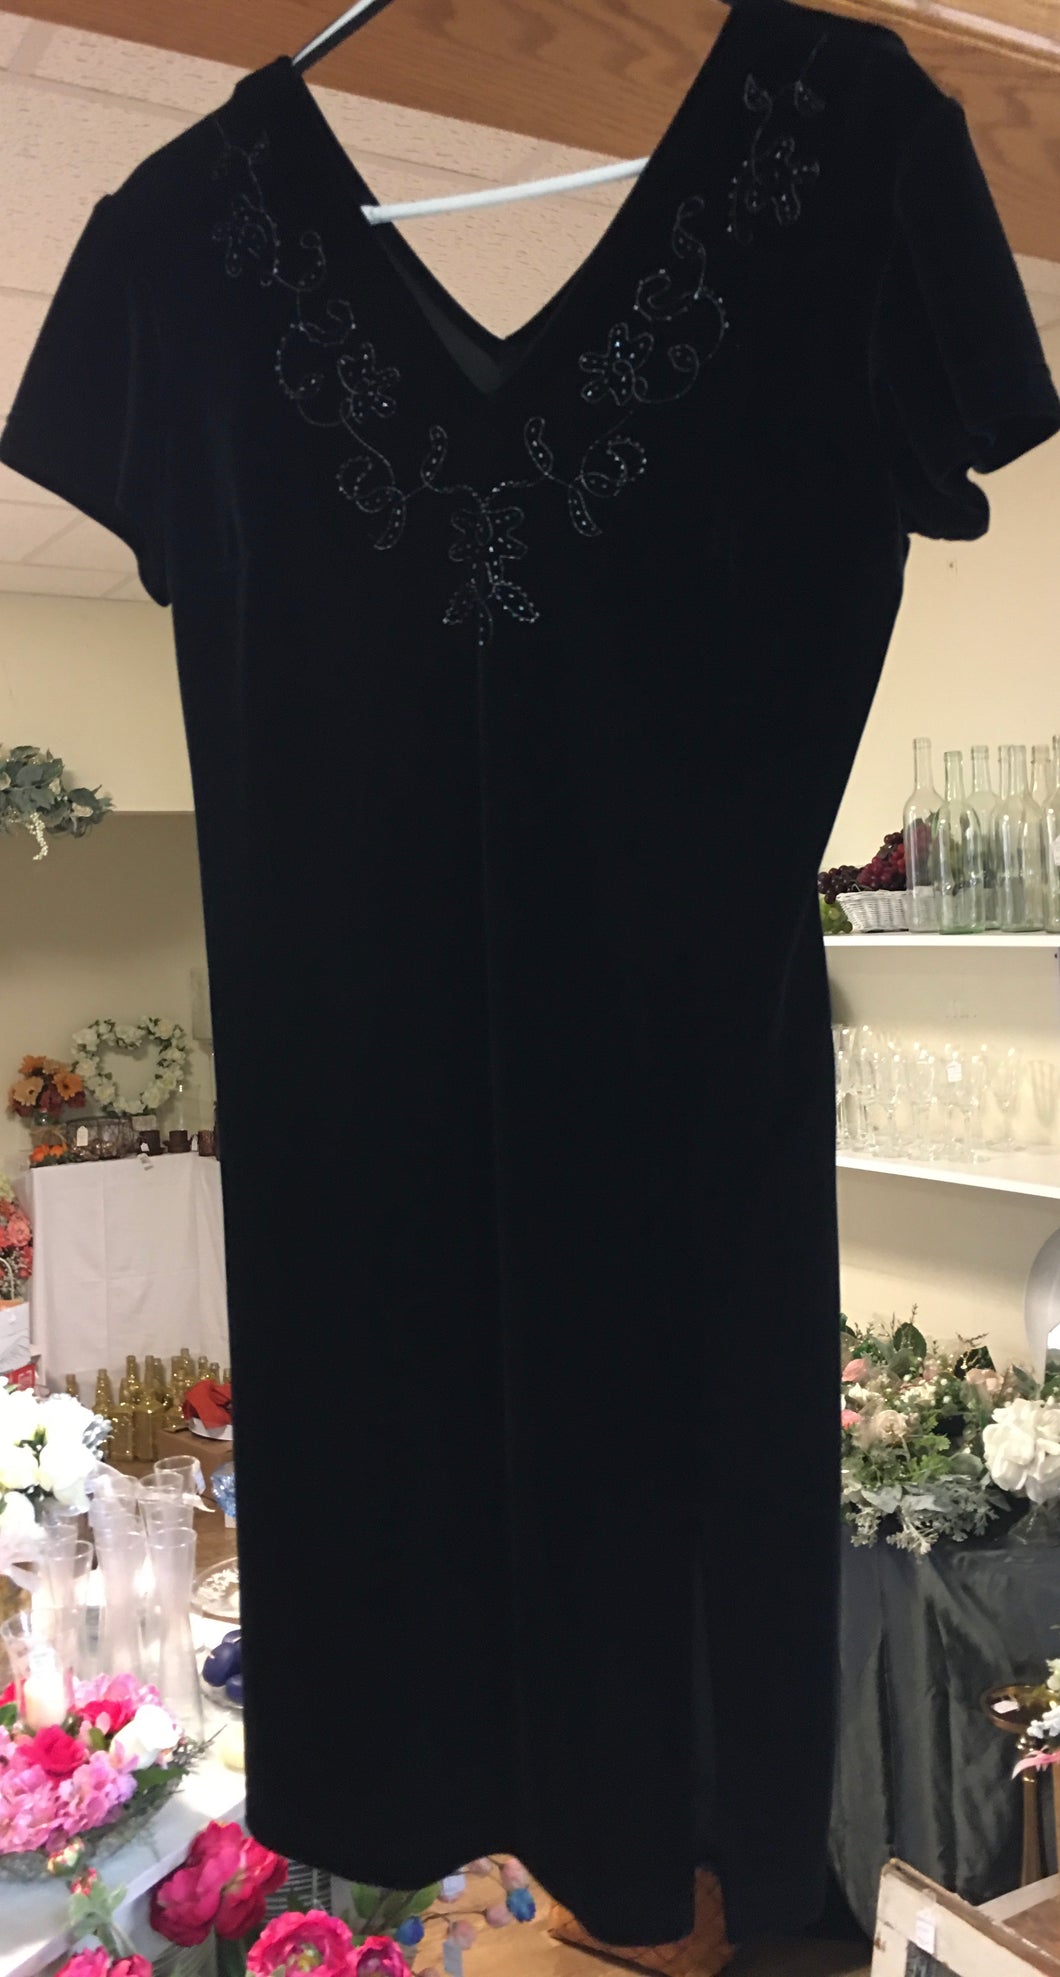 OTOL200-E Black Velvet Dress Size 10